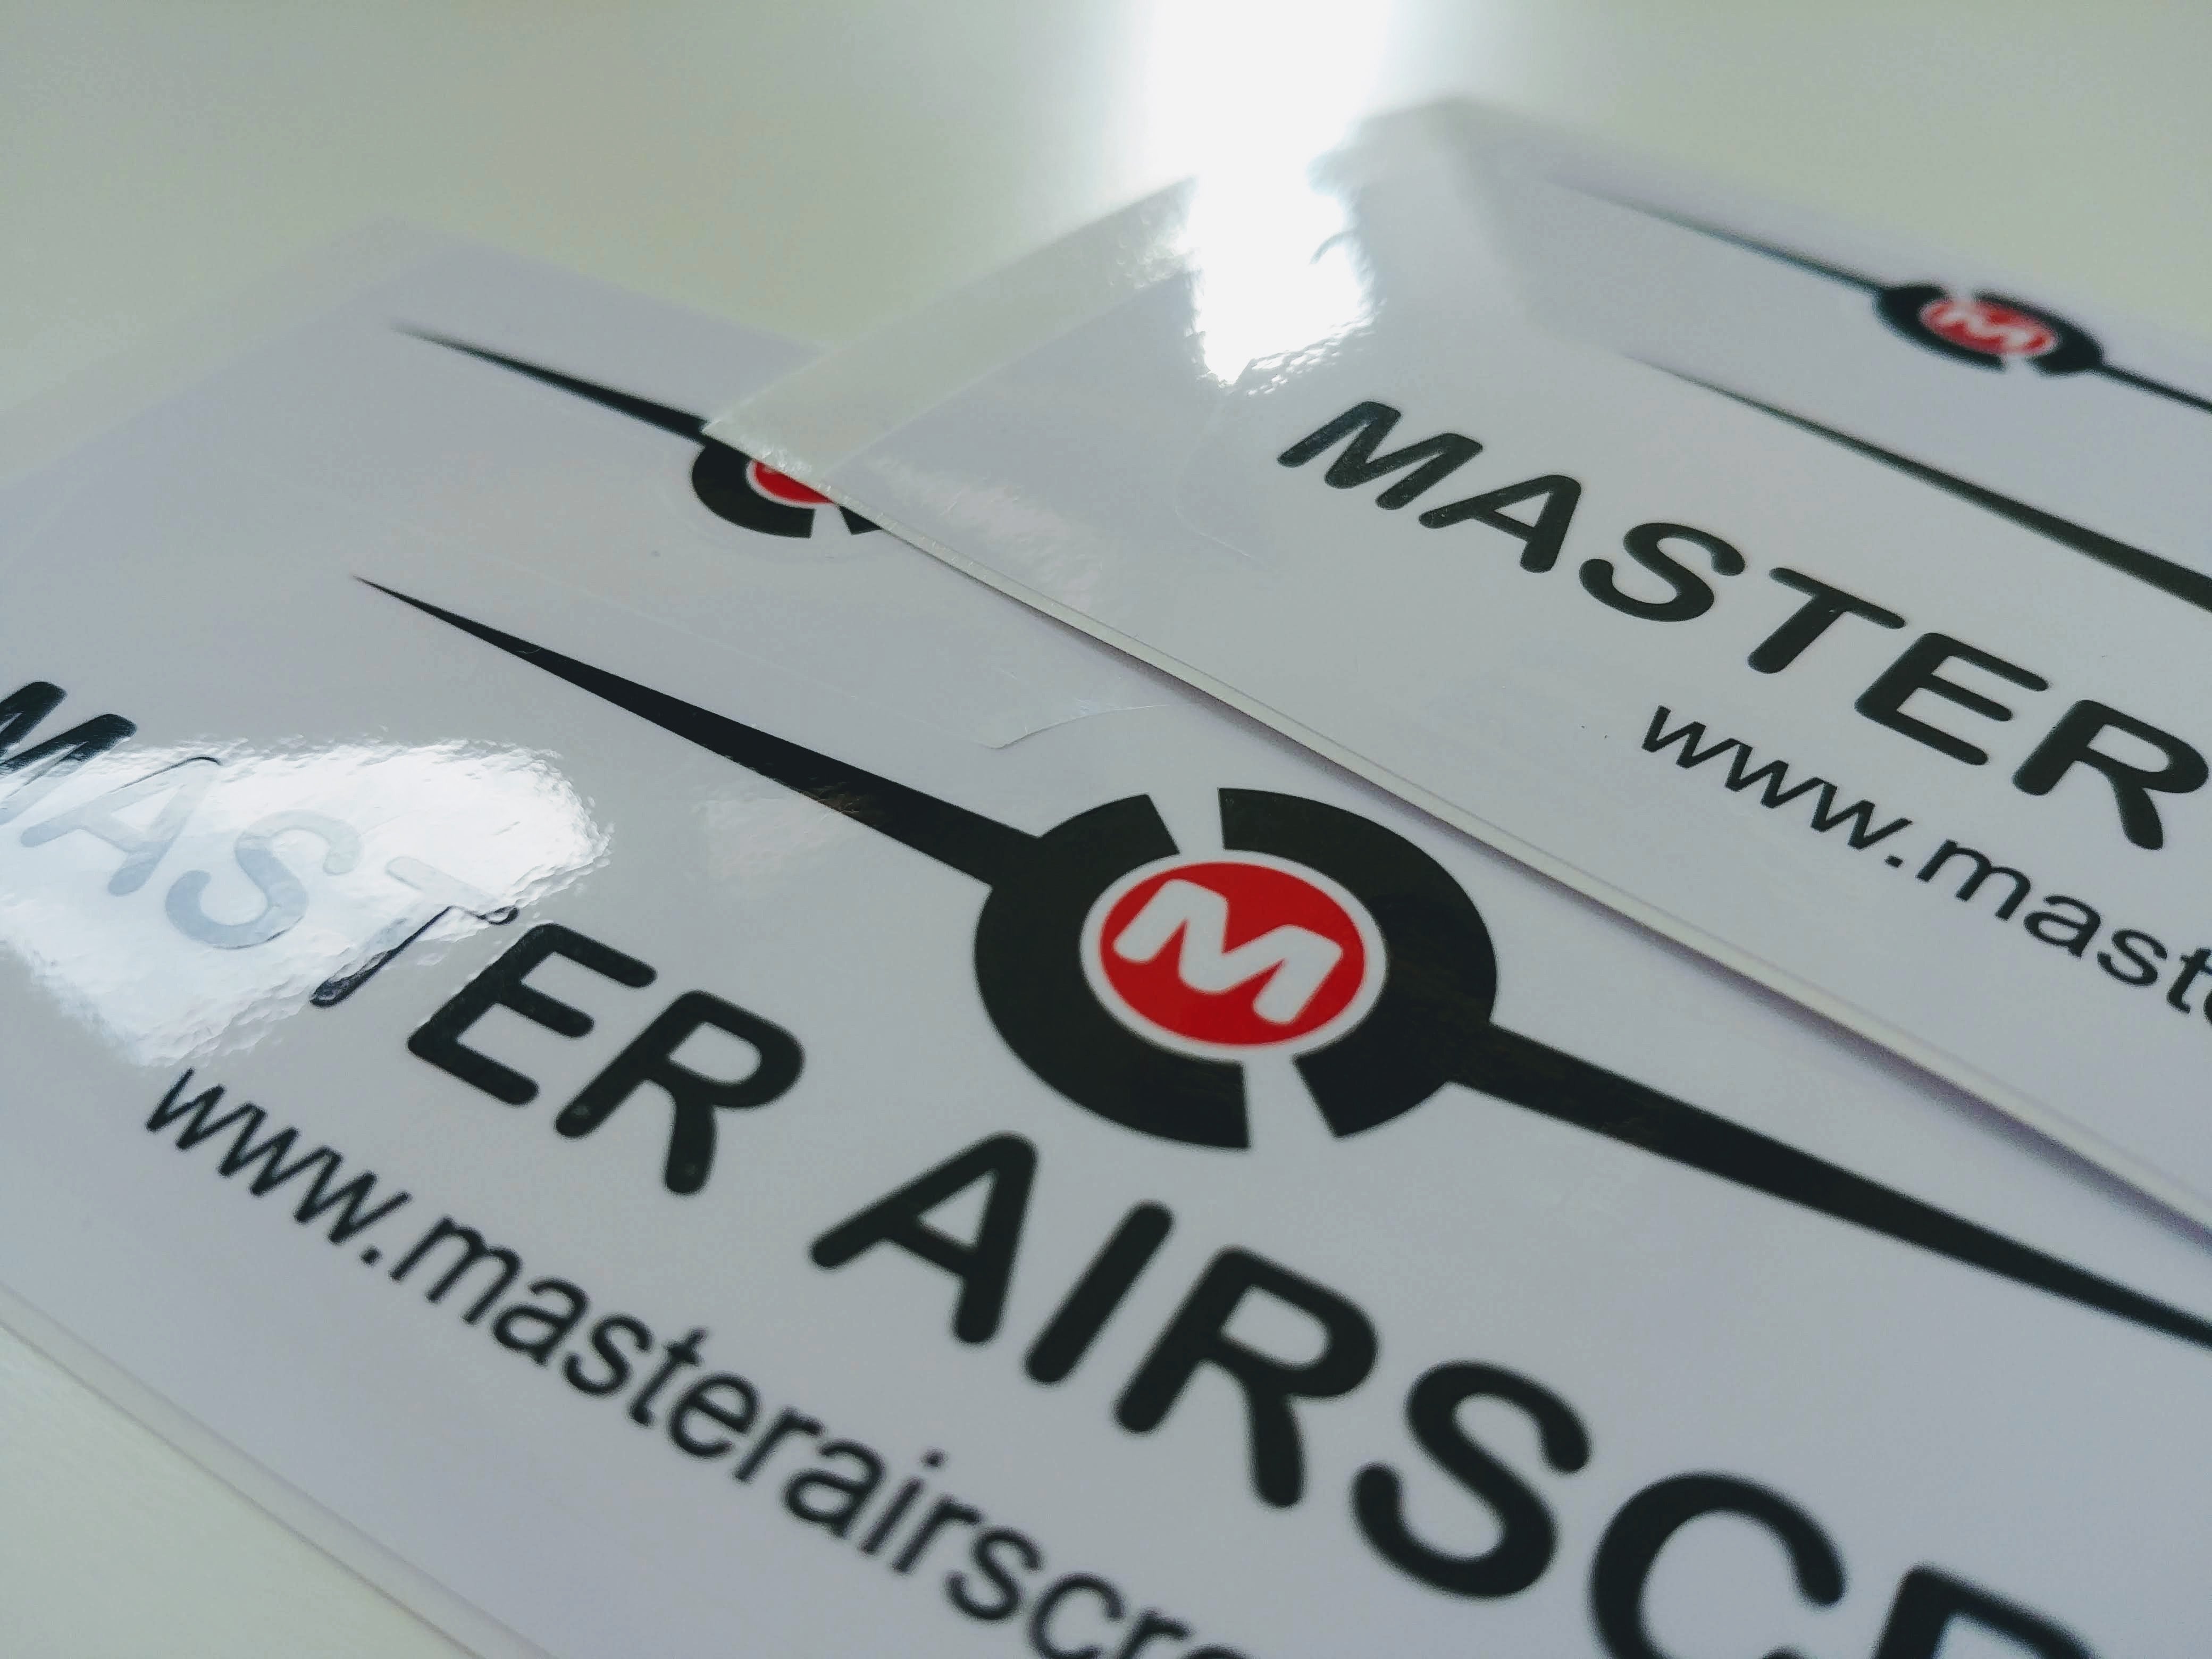 MAS Premium Stickers x2 - Master Airscrew